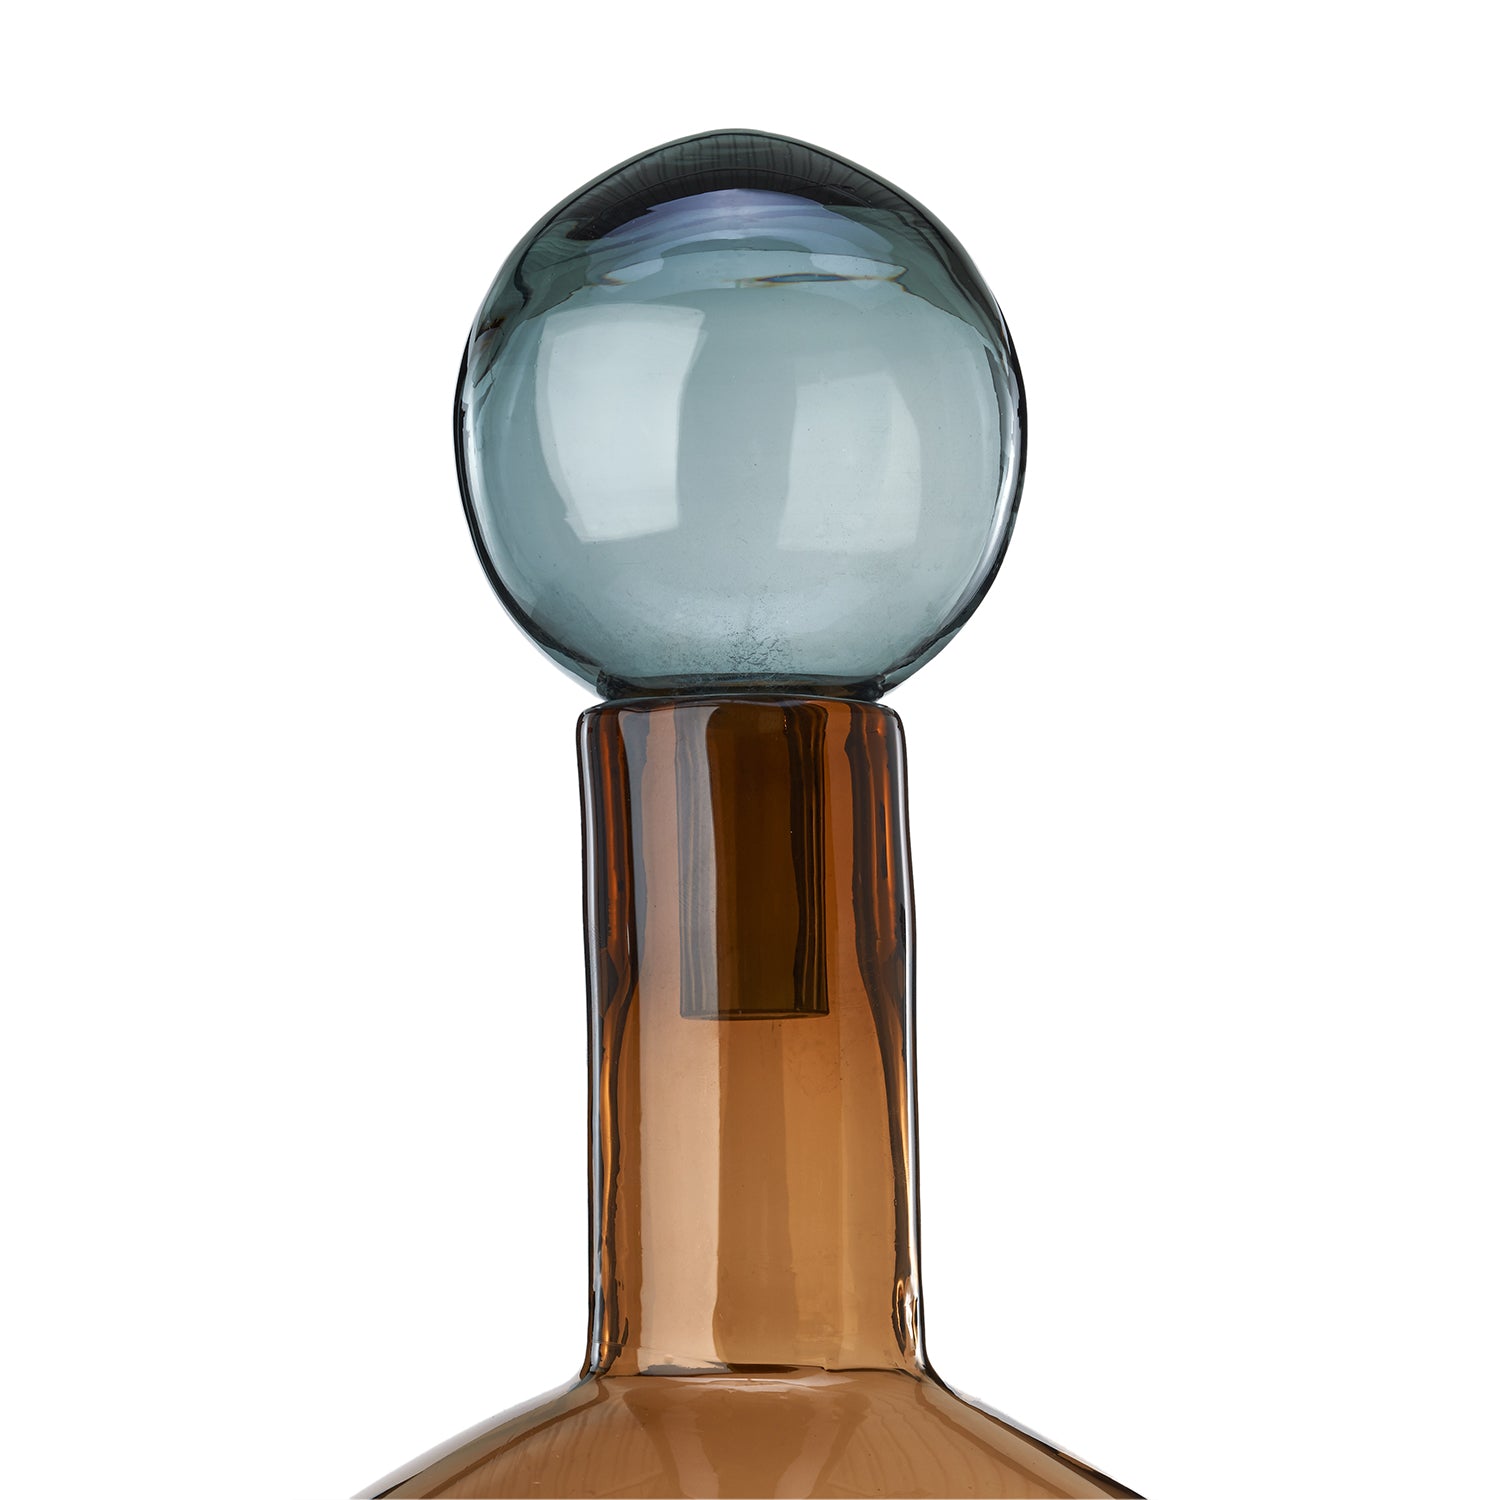 Bubbles & Bottles XL (set of 4) - The Design Choice